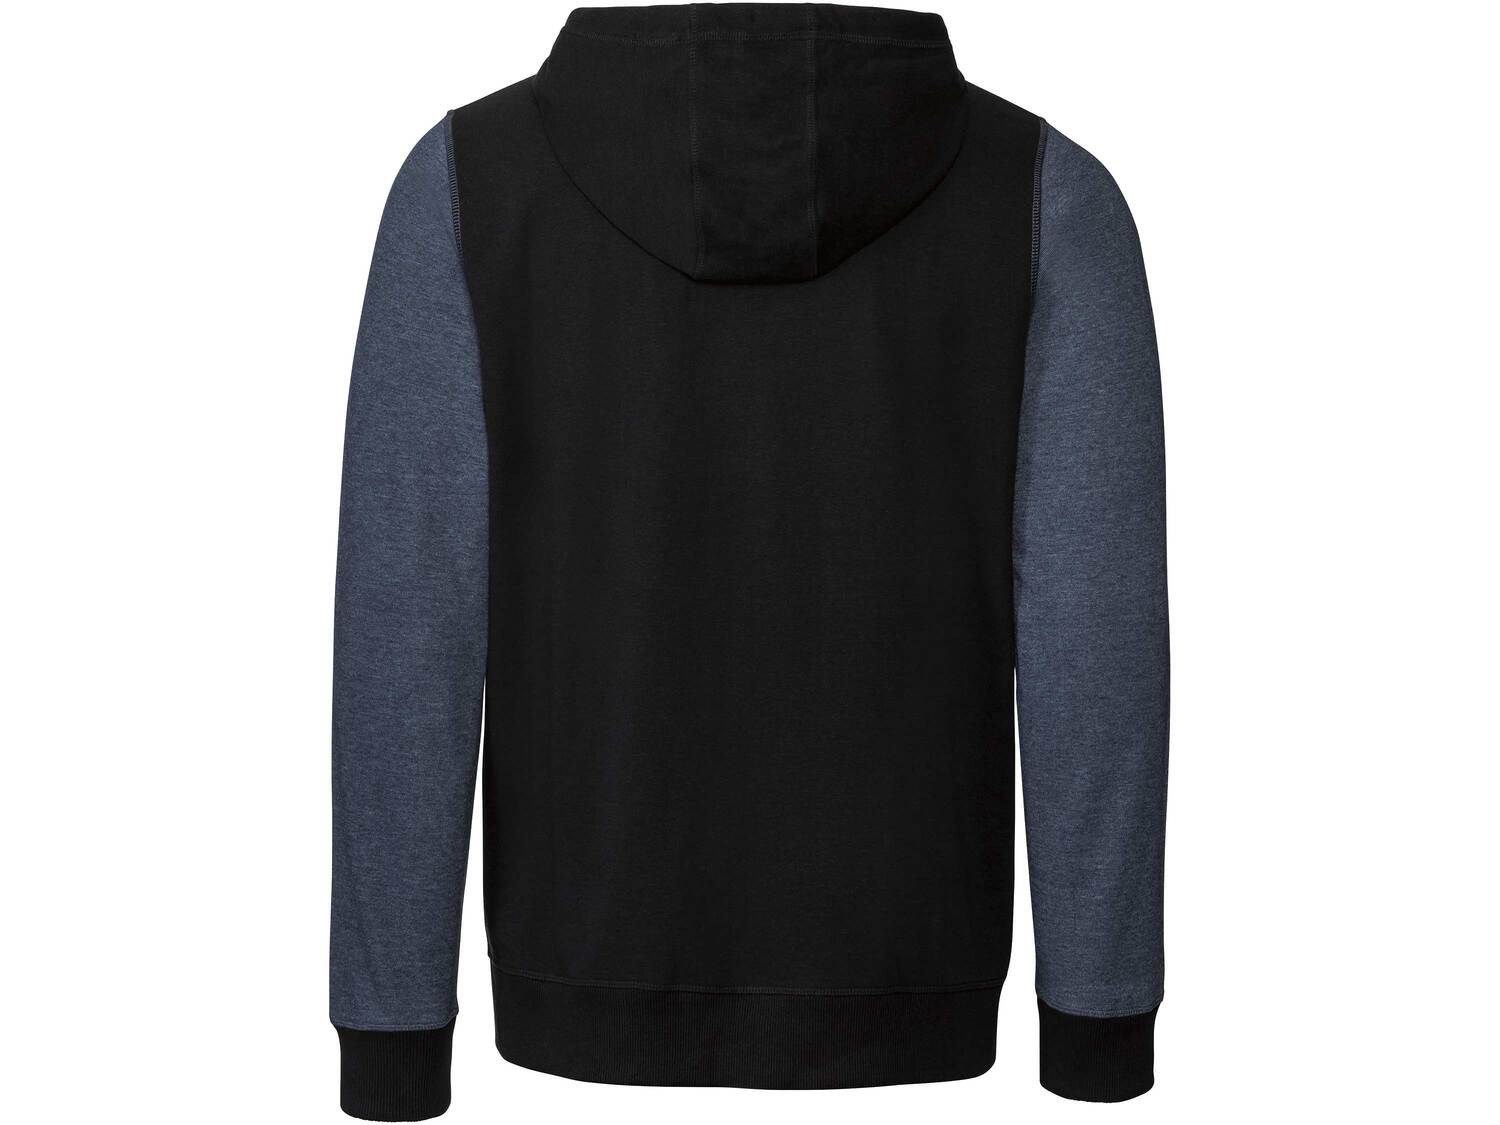 Bluza męska z bawełną Crivit, cena 39,99 PLN 
- rozmiary: M-XL
- z wygodnym ...